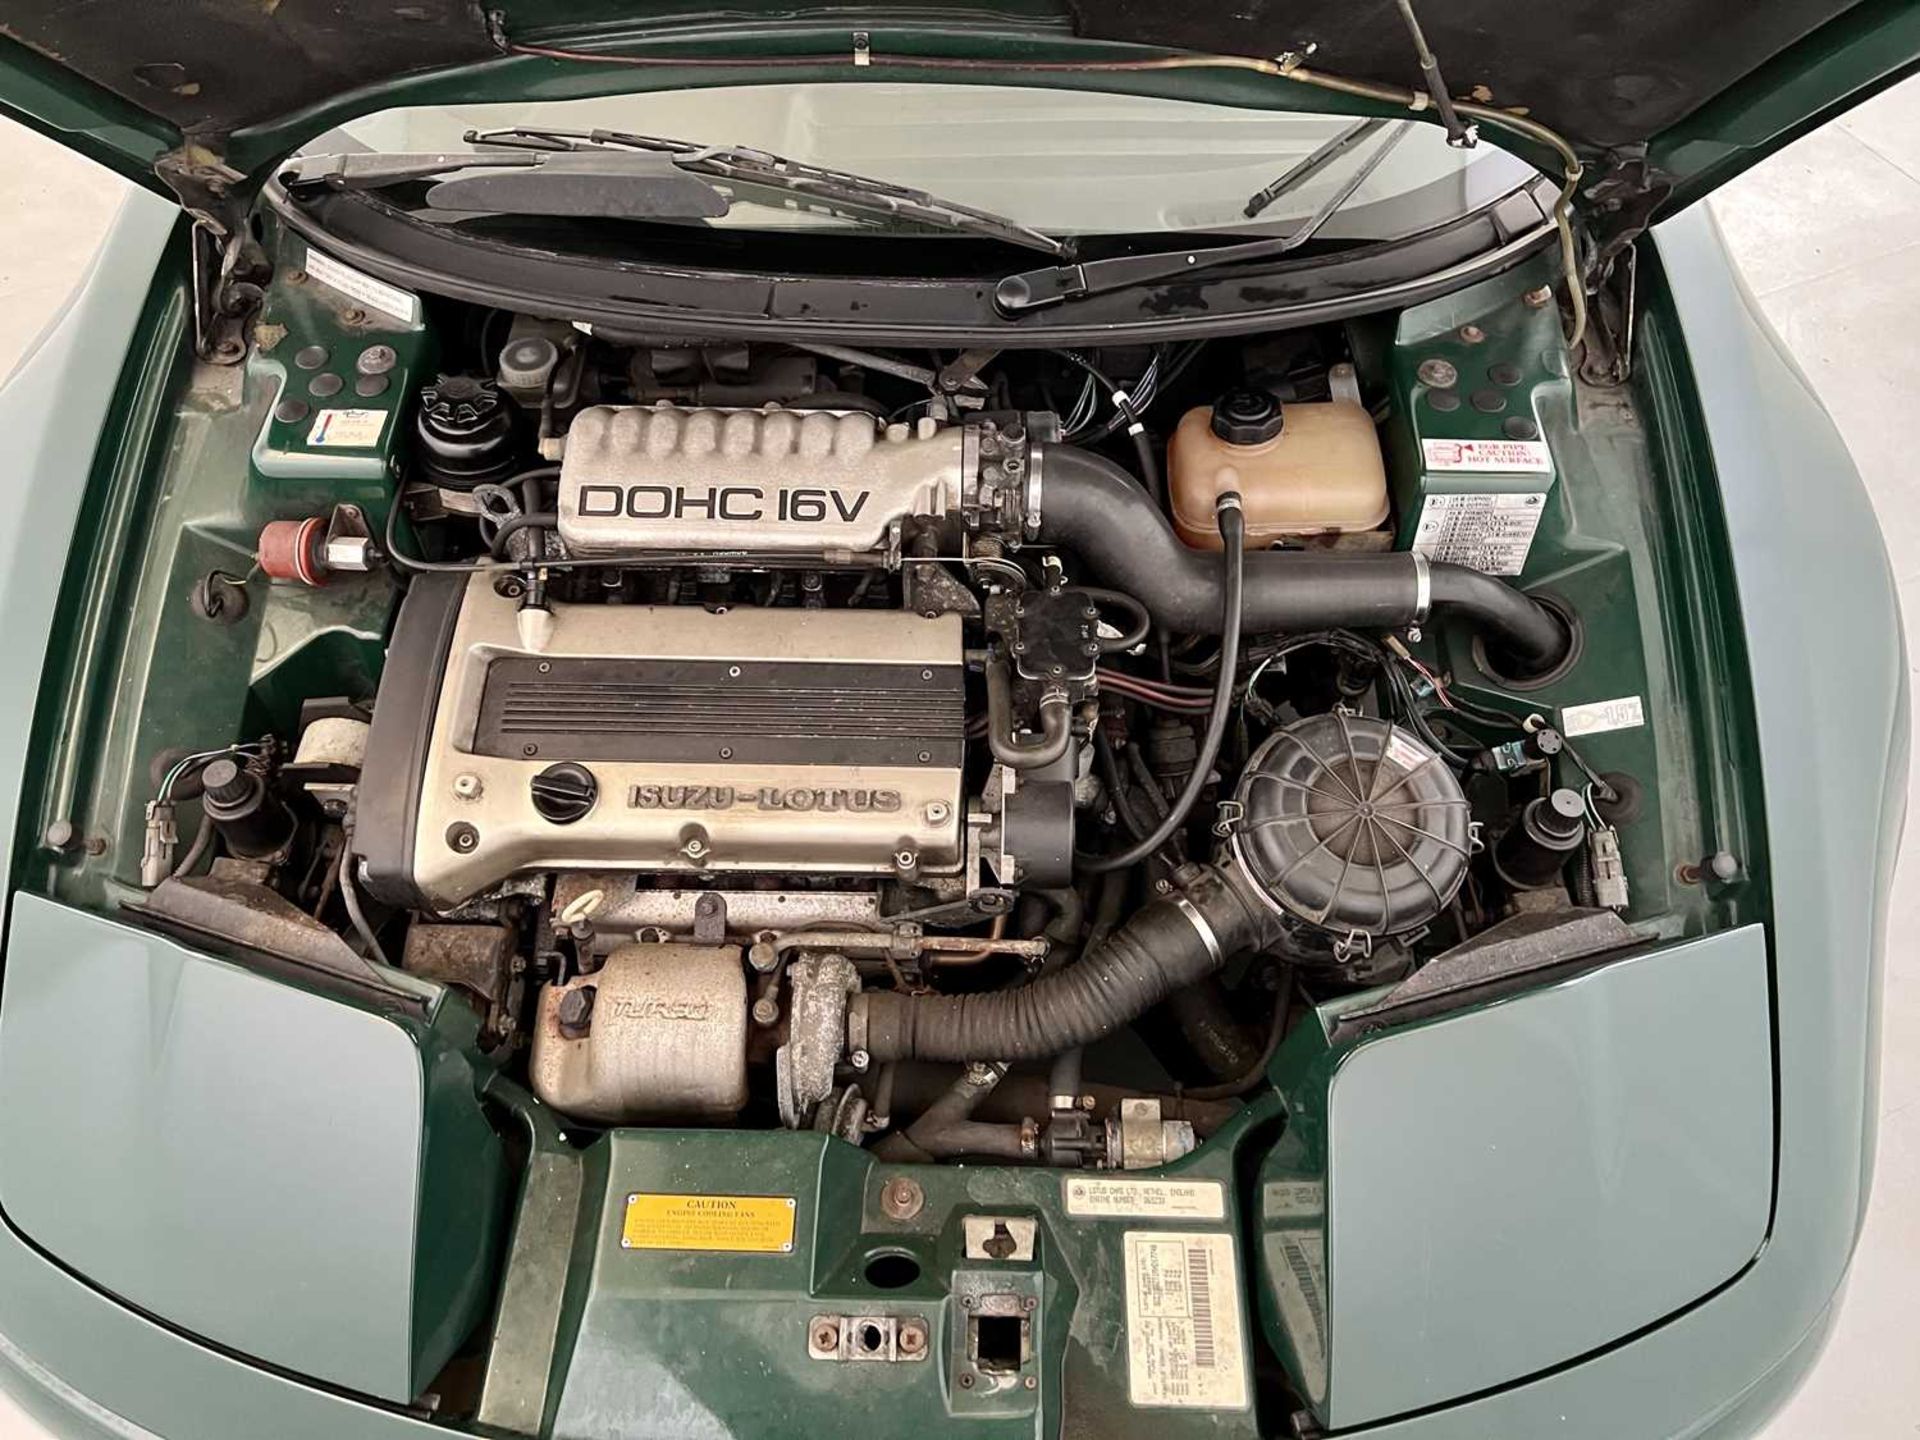 1991 Lotus Elan 1.7 litre turbo engine - Image 25 of 25